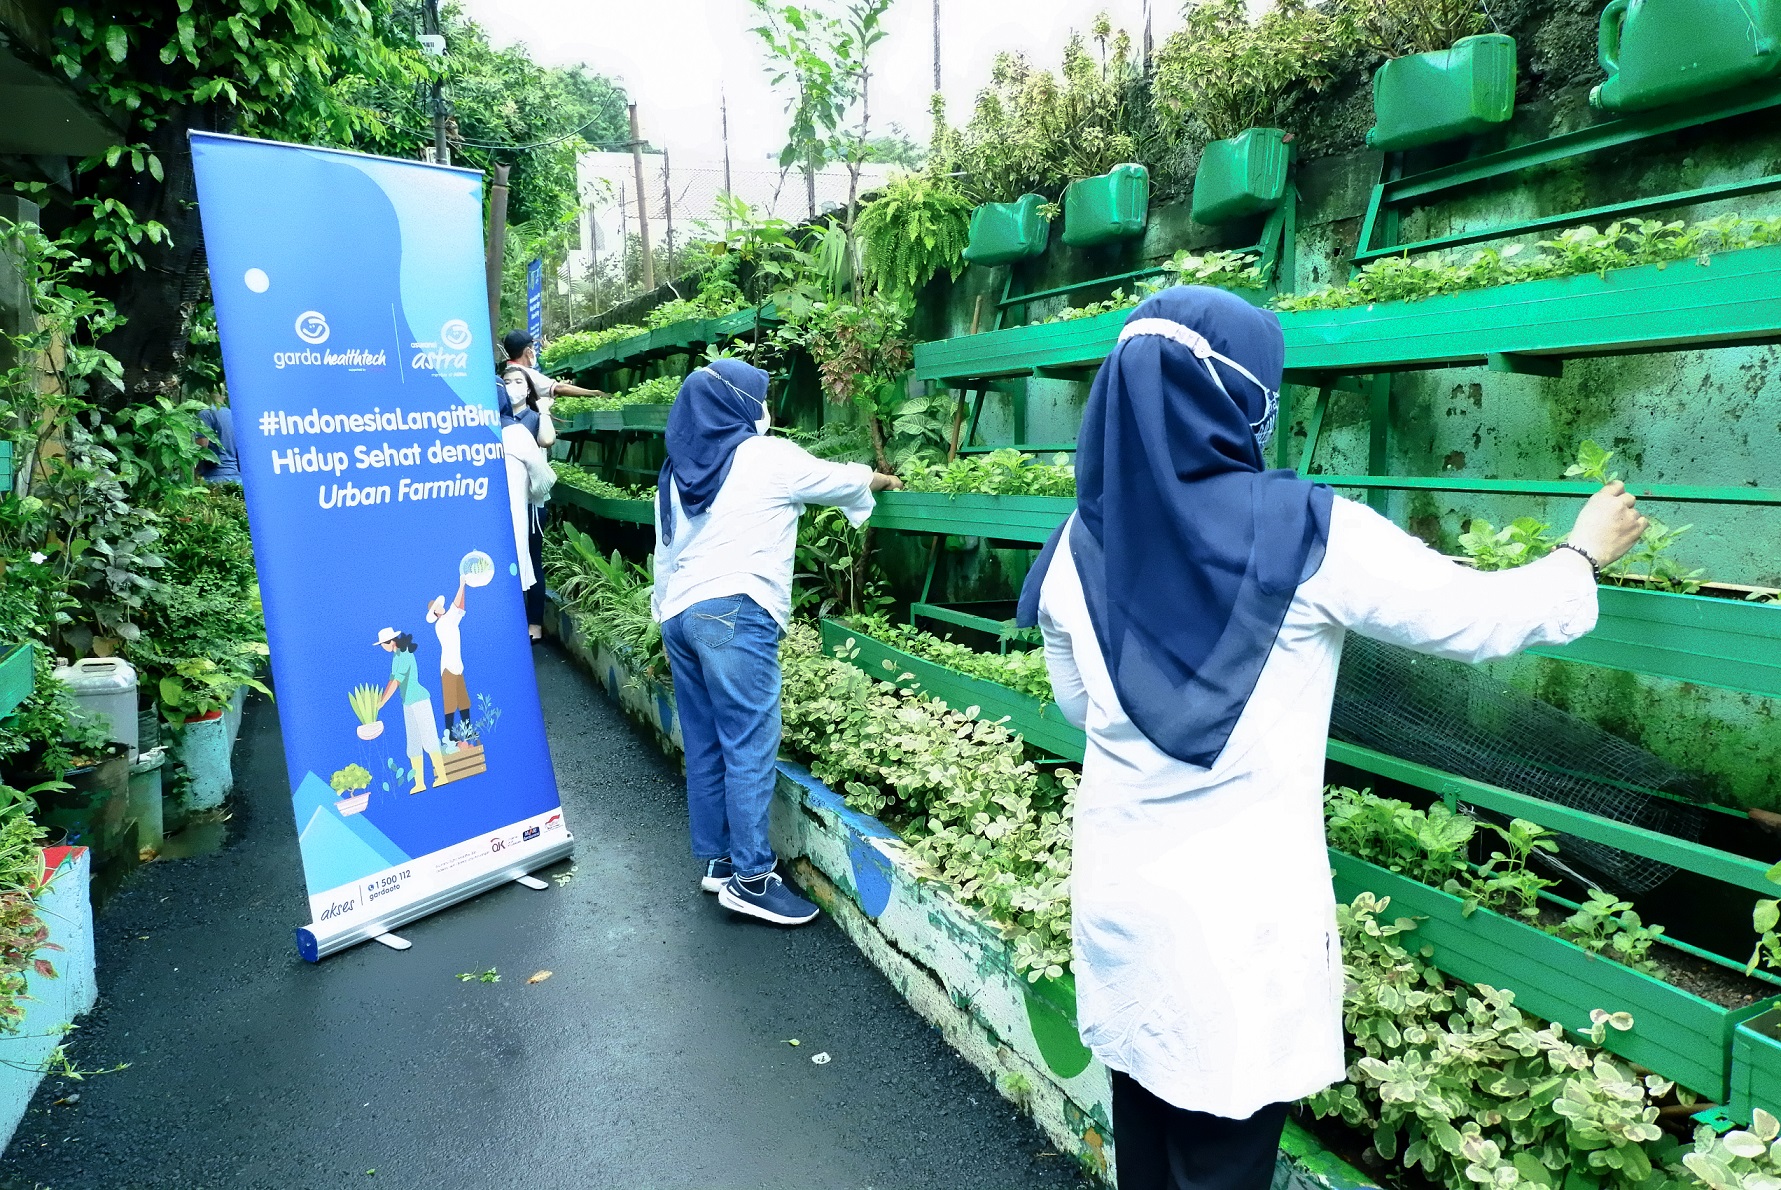 Kelompok wanita tani KBA Karina (Kampung Berseri Astra, Kampung Ramah Lingkungan Asuransi Astra) RW 01 Pela Mampang memiliki moto sejengkal tanah sejuta manfaat yang mengajak masyarakat untuk mulai hidup sehat dengan melakukan urban farming dalam rangkaian kampanye #IndonesiaLangitBiru.